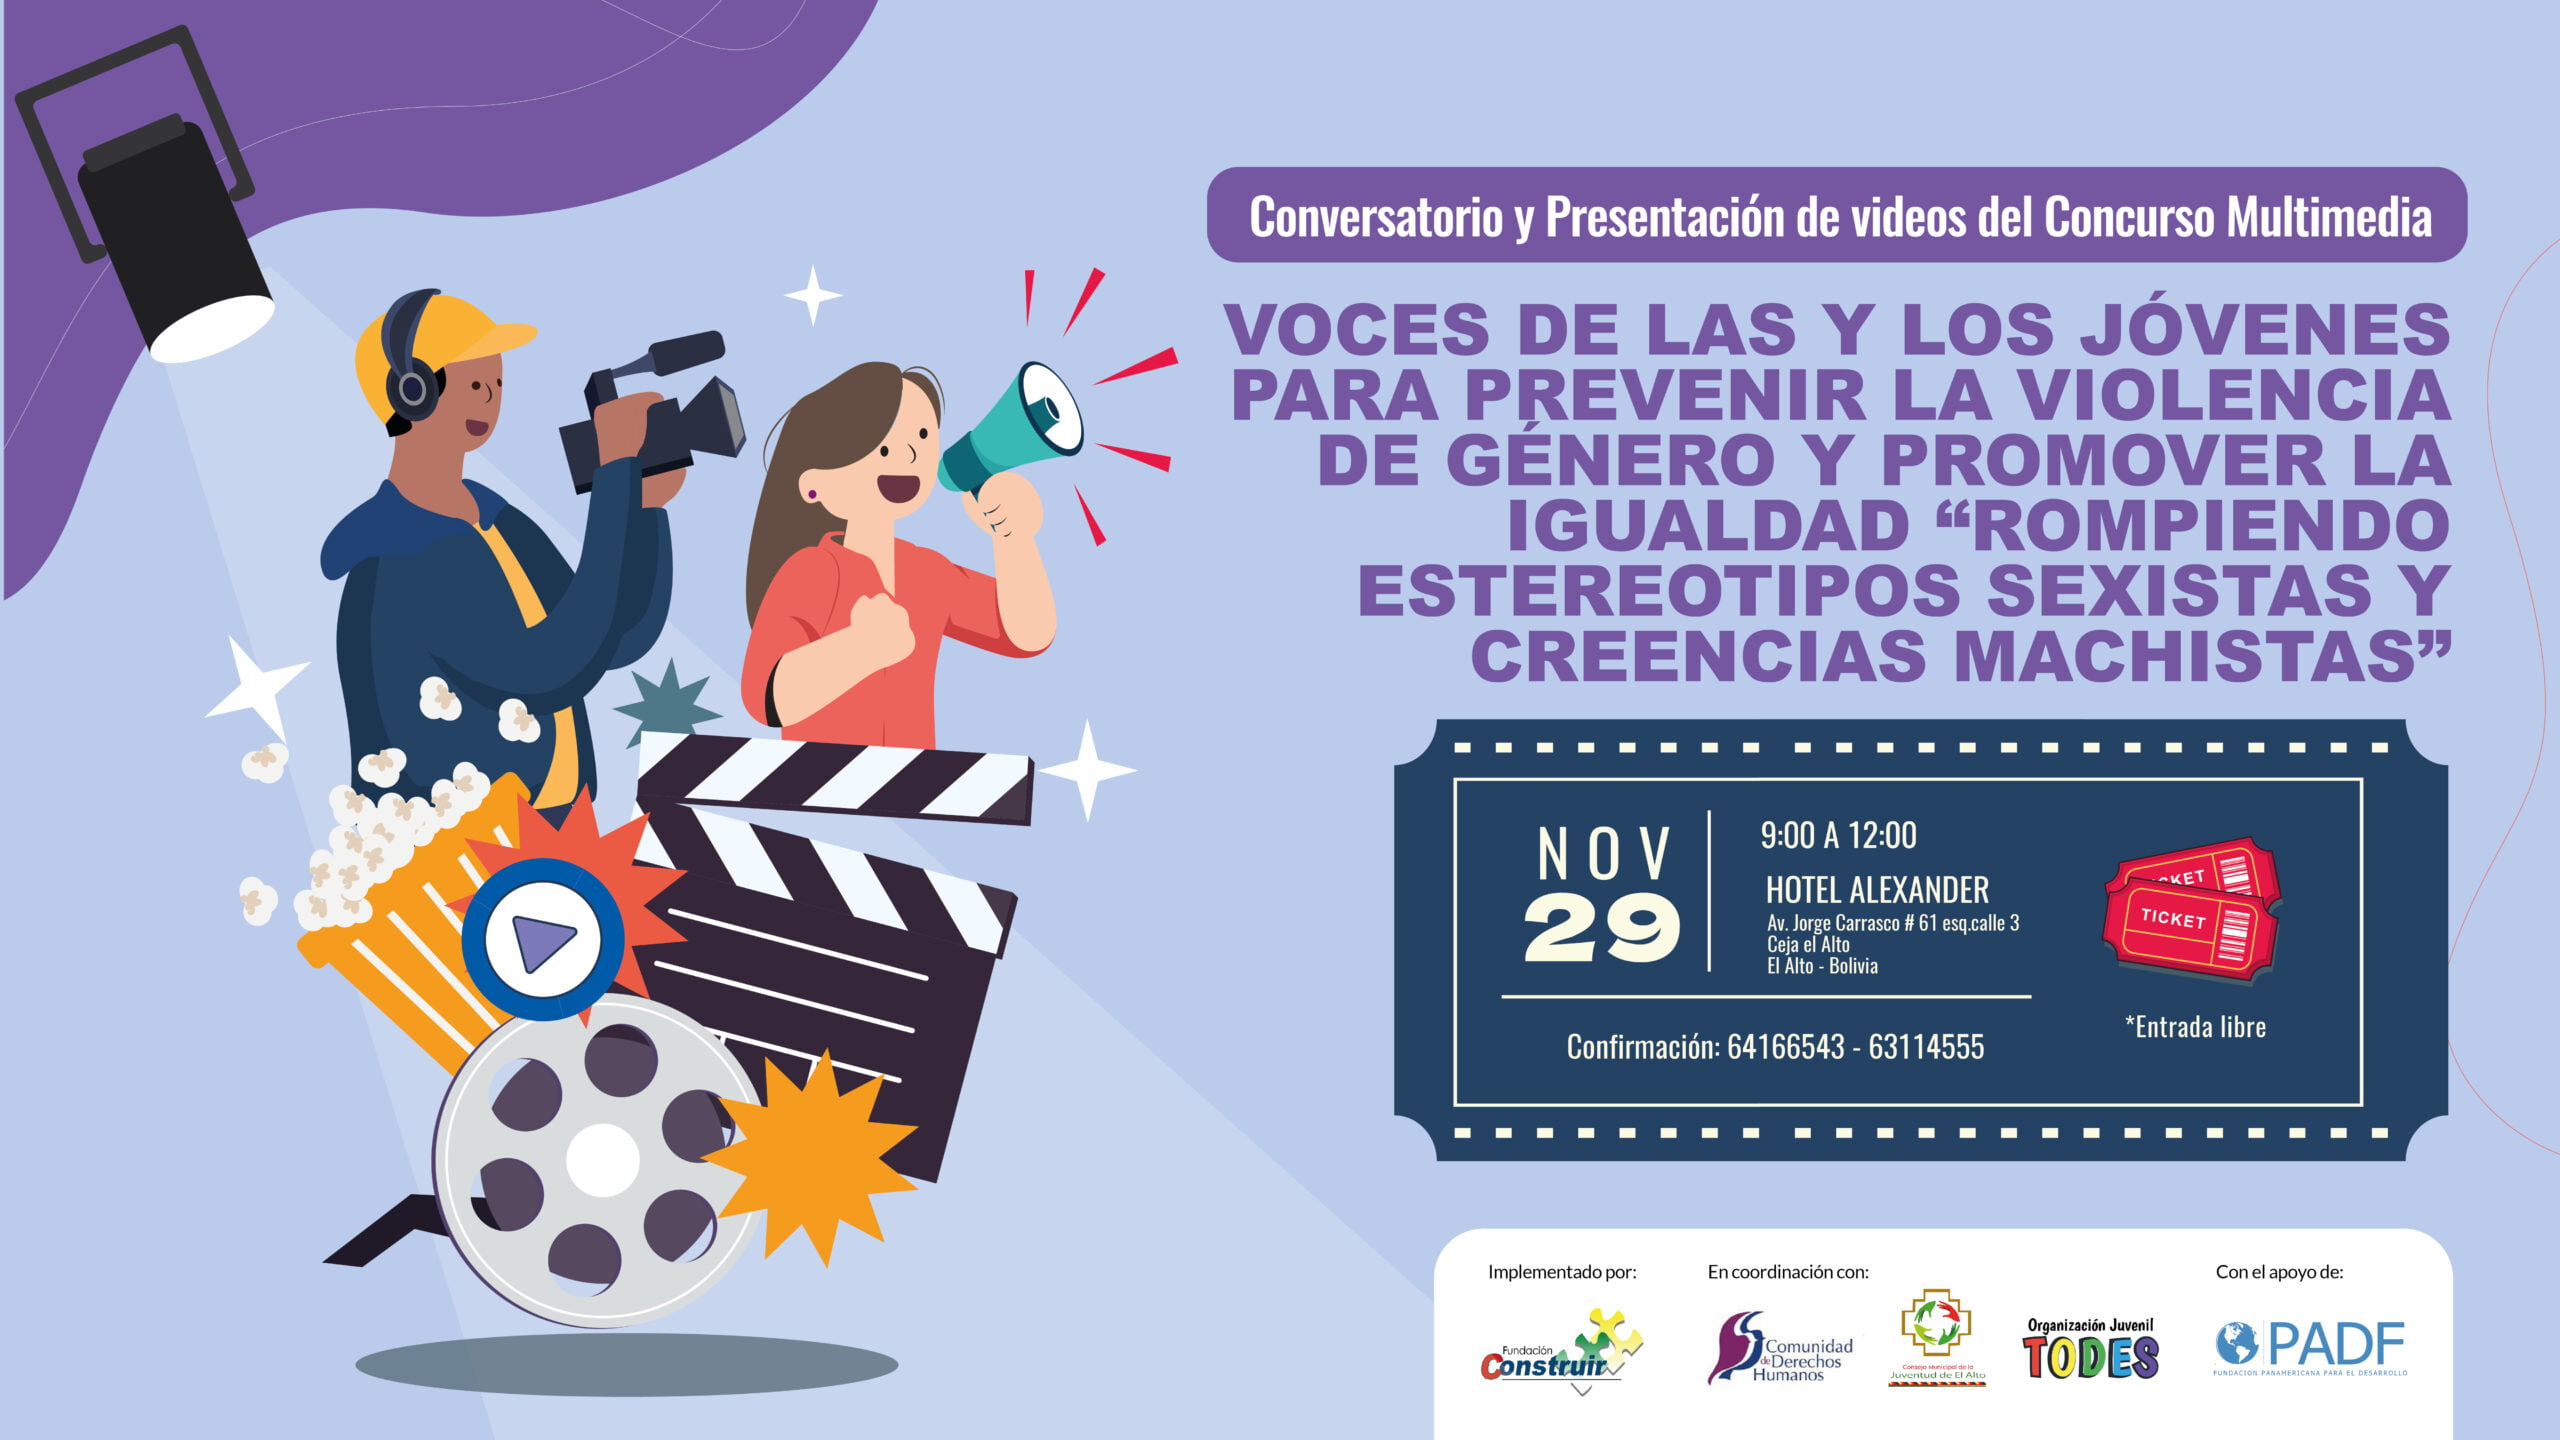 El Alto – Conversatorio y presentación de videos del concurso multimedia Voces de las y los jóvenes para prevenir la violencia de género y promover la igualdad:  “Rompiendo estereotipos sexistas y creencias machistas”